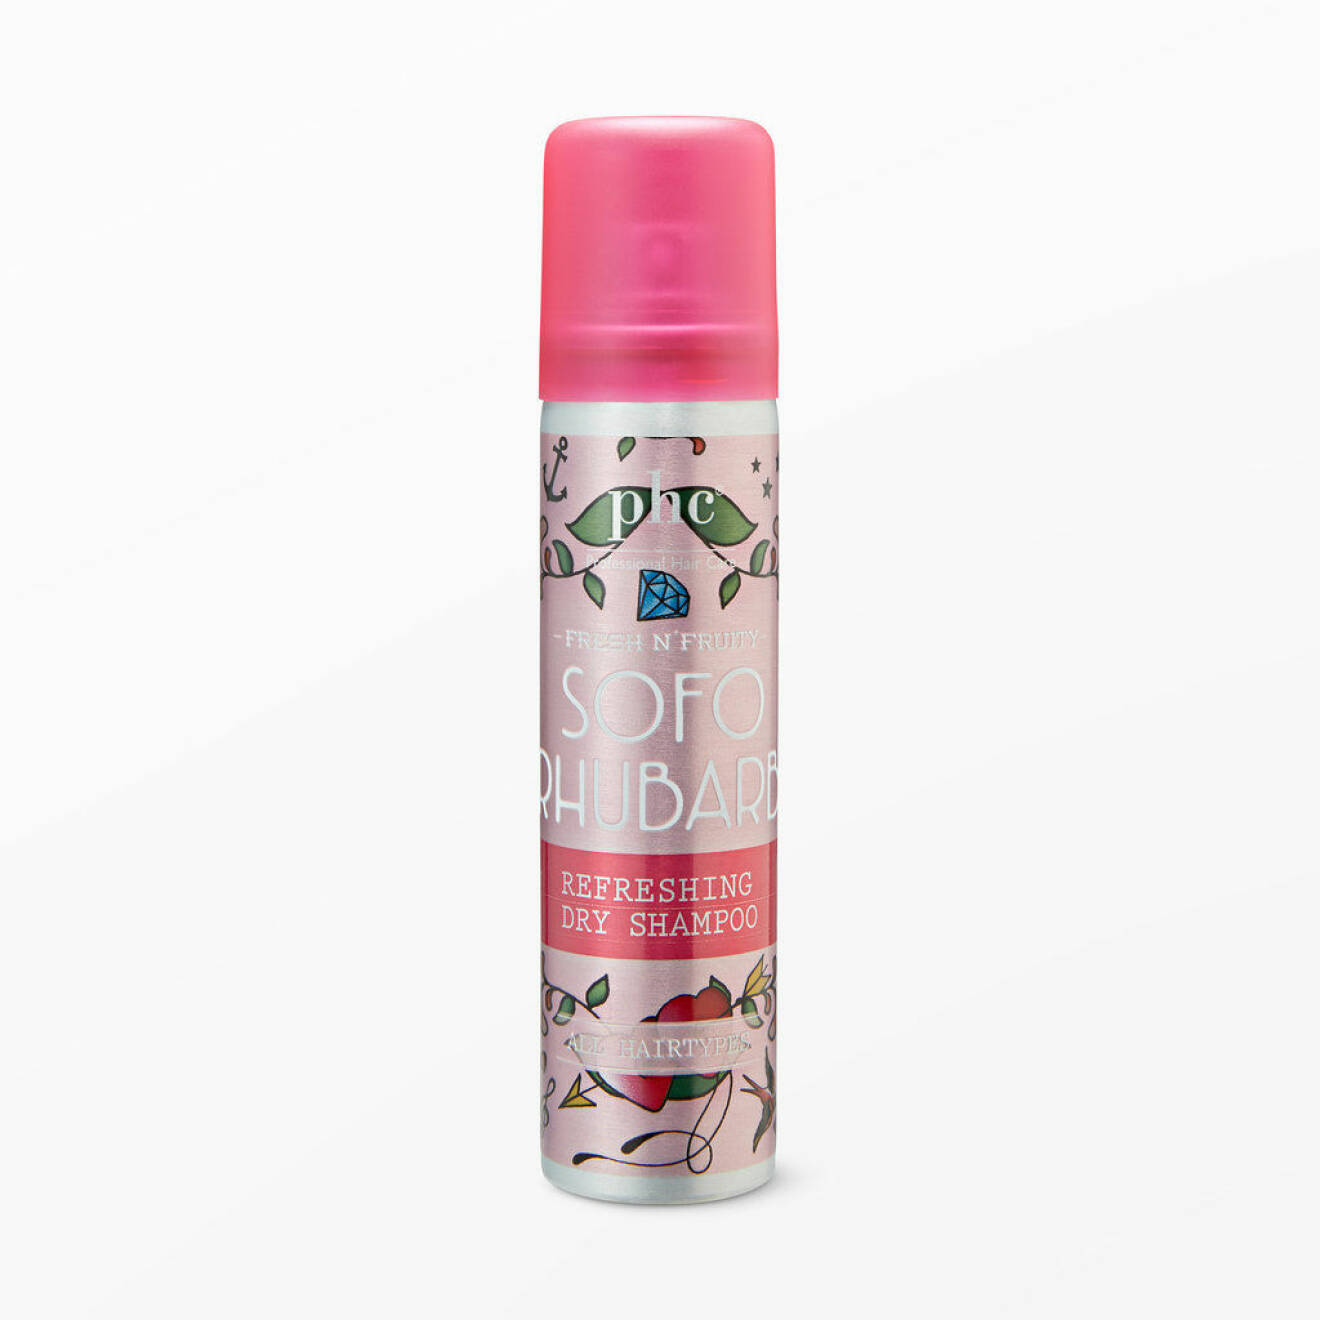 En bild på ett torrshampo, produkten Phc – Fresh n' Fruity SOFO Rhubarb Dry Shampoo.